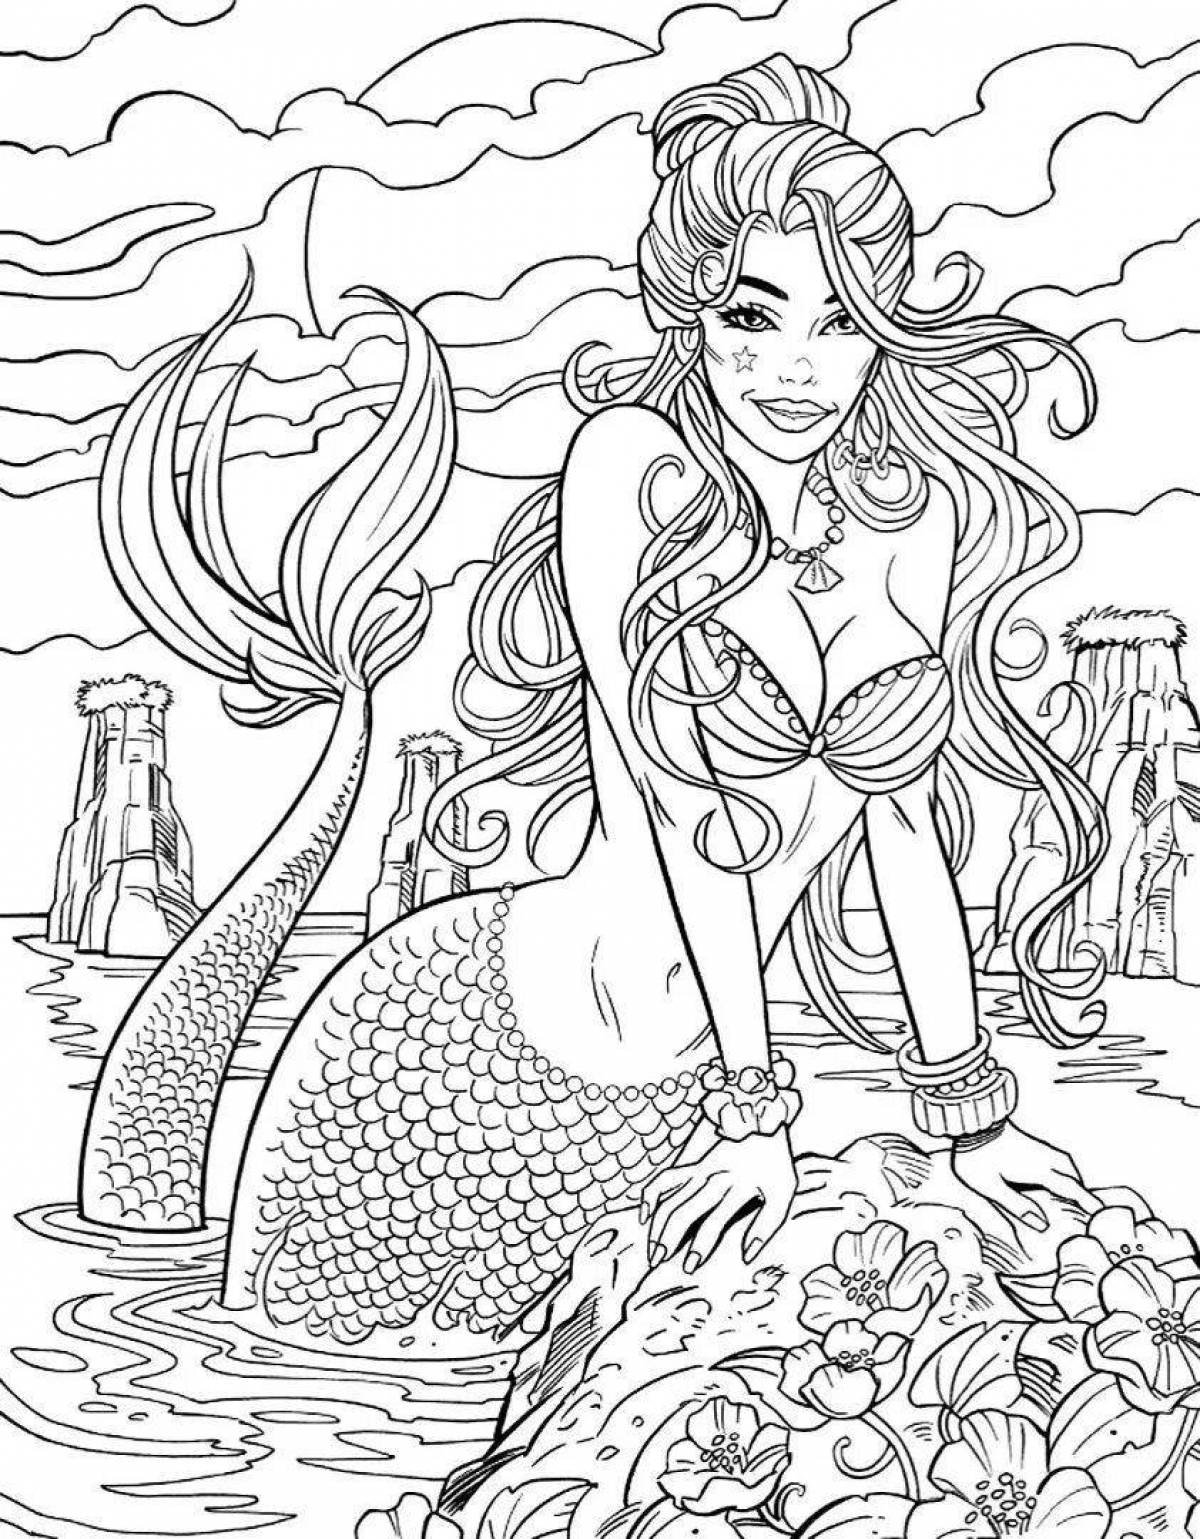 Joyful coloring beautiful mermaid